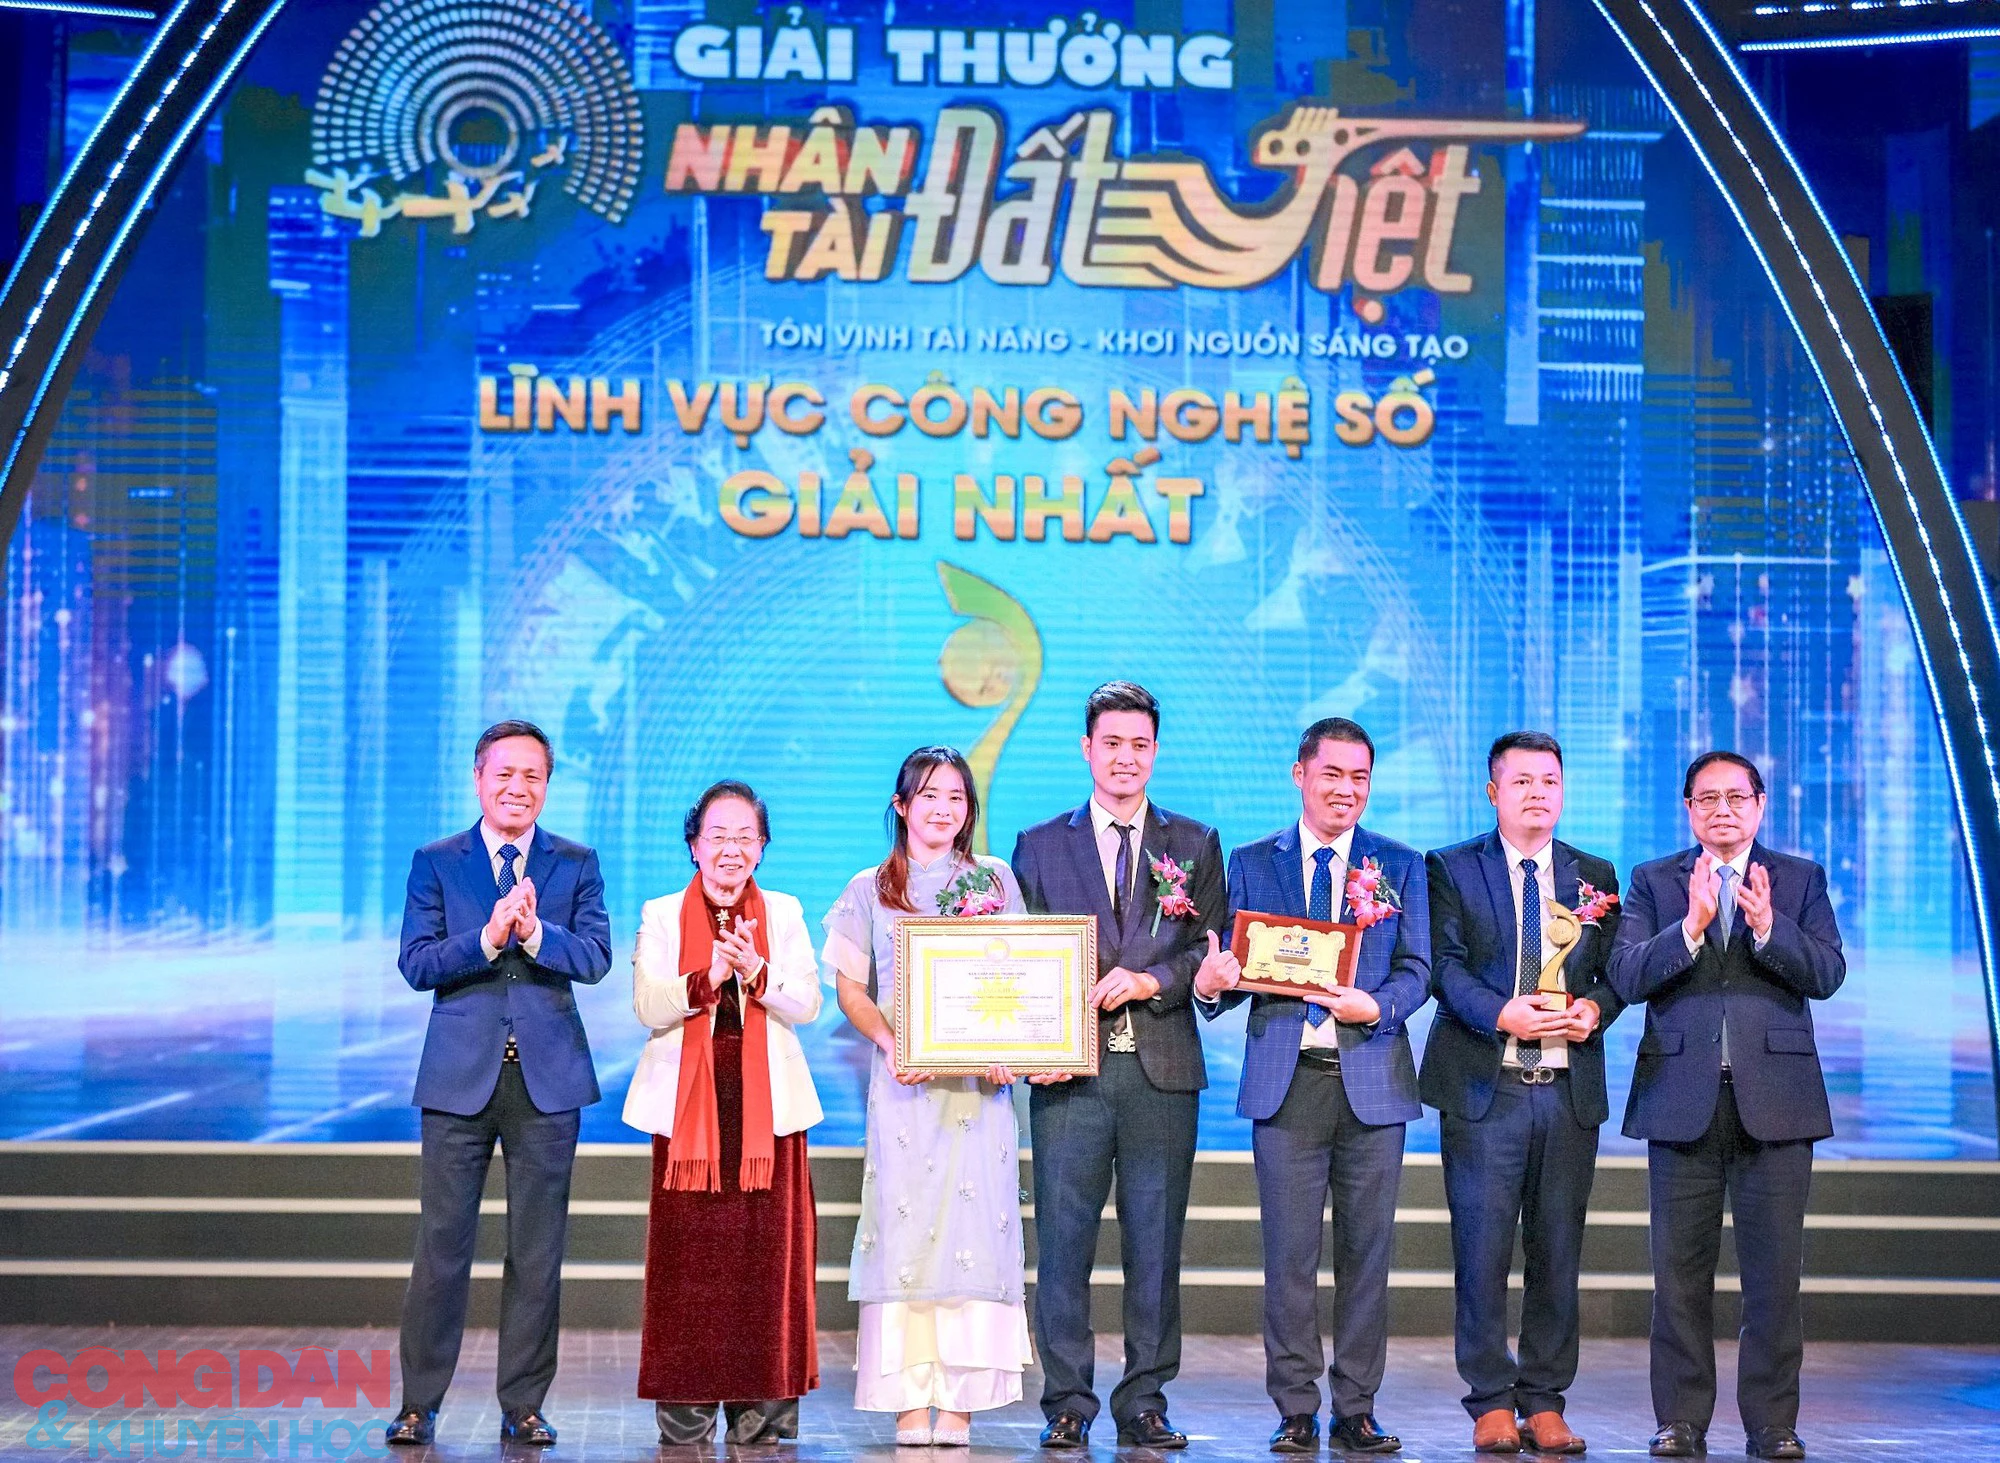 Thủ tướng Phạm Minh Chính: Giải thưởng Nhân tài Đất Việt khẳng định trí tuệ Việt Nam với khu vực và thế giới- Ảnh 1.